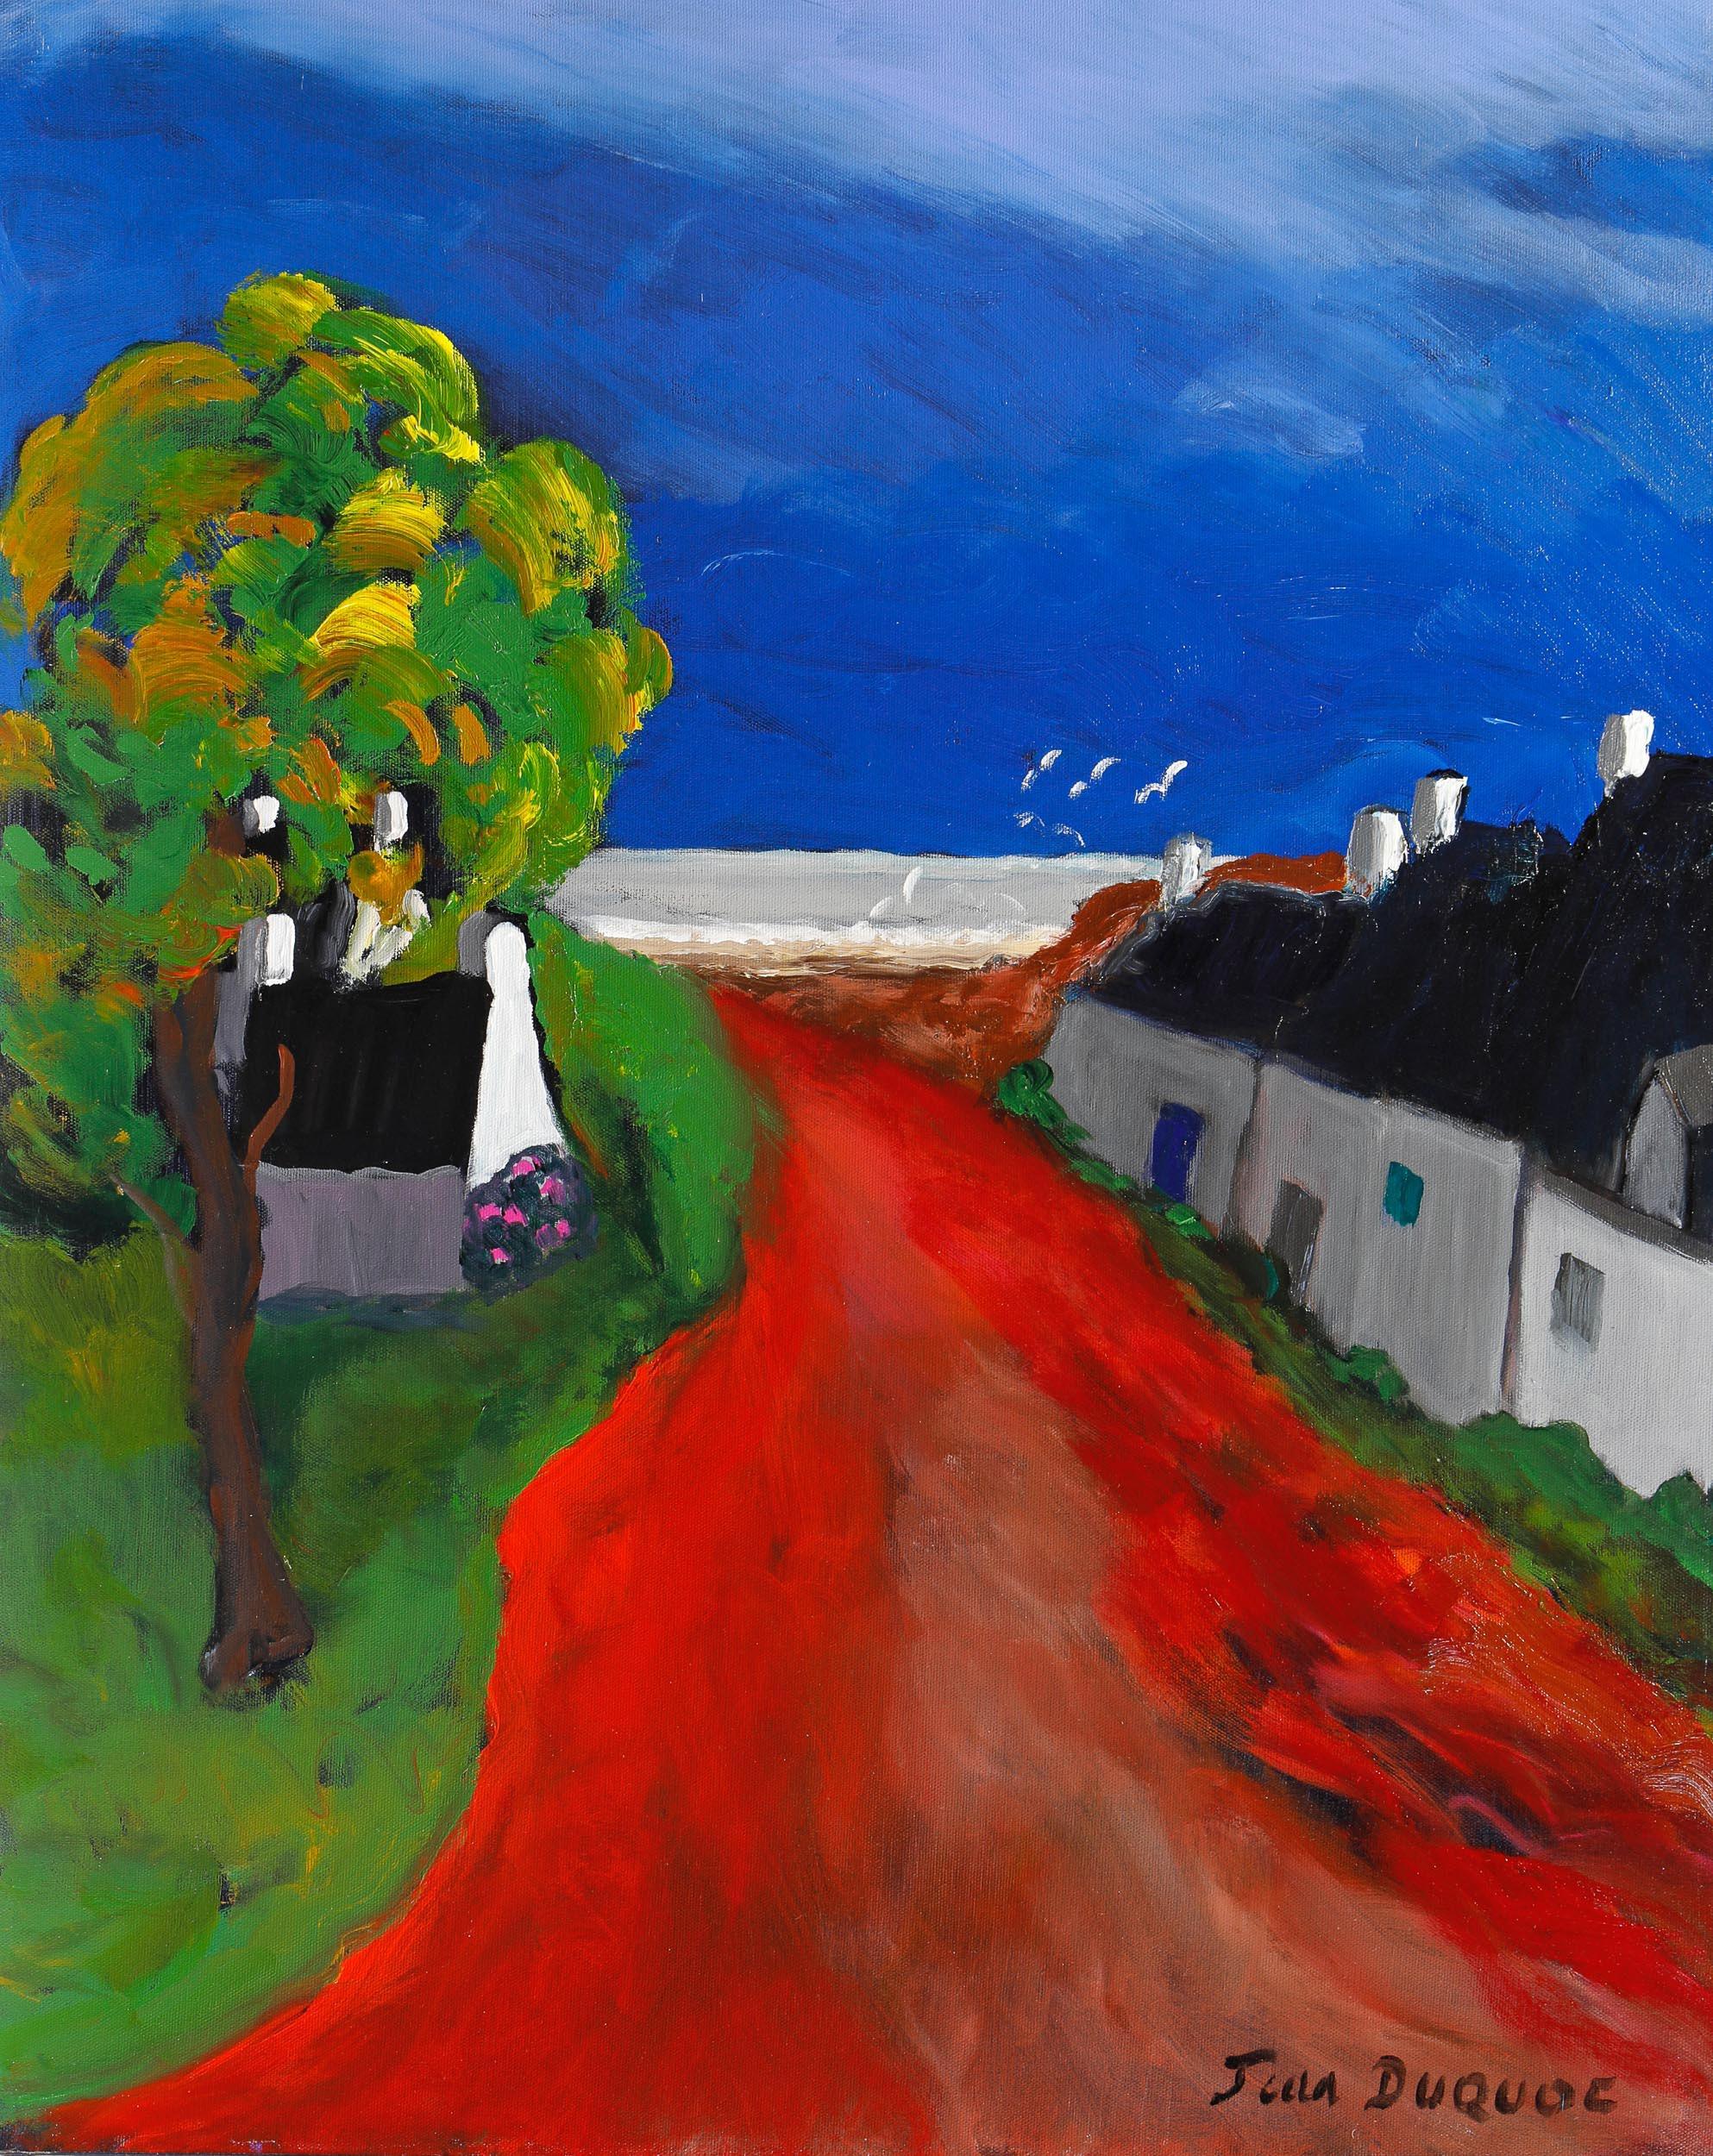 Signé en bas à droite

Jean Duquoc est un artiste français né en 1937 qui vit et travaille à Belz, en Bretagne. Dans son œuvre, on peut voir l'habileté avec laquelle il utilise la couleur, allant directement à l'essentiel, dans la force de